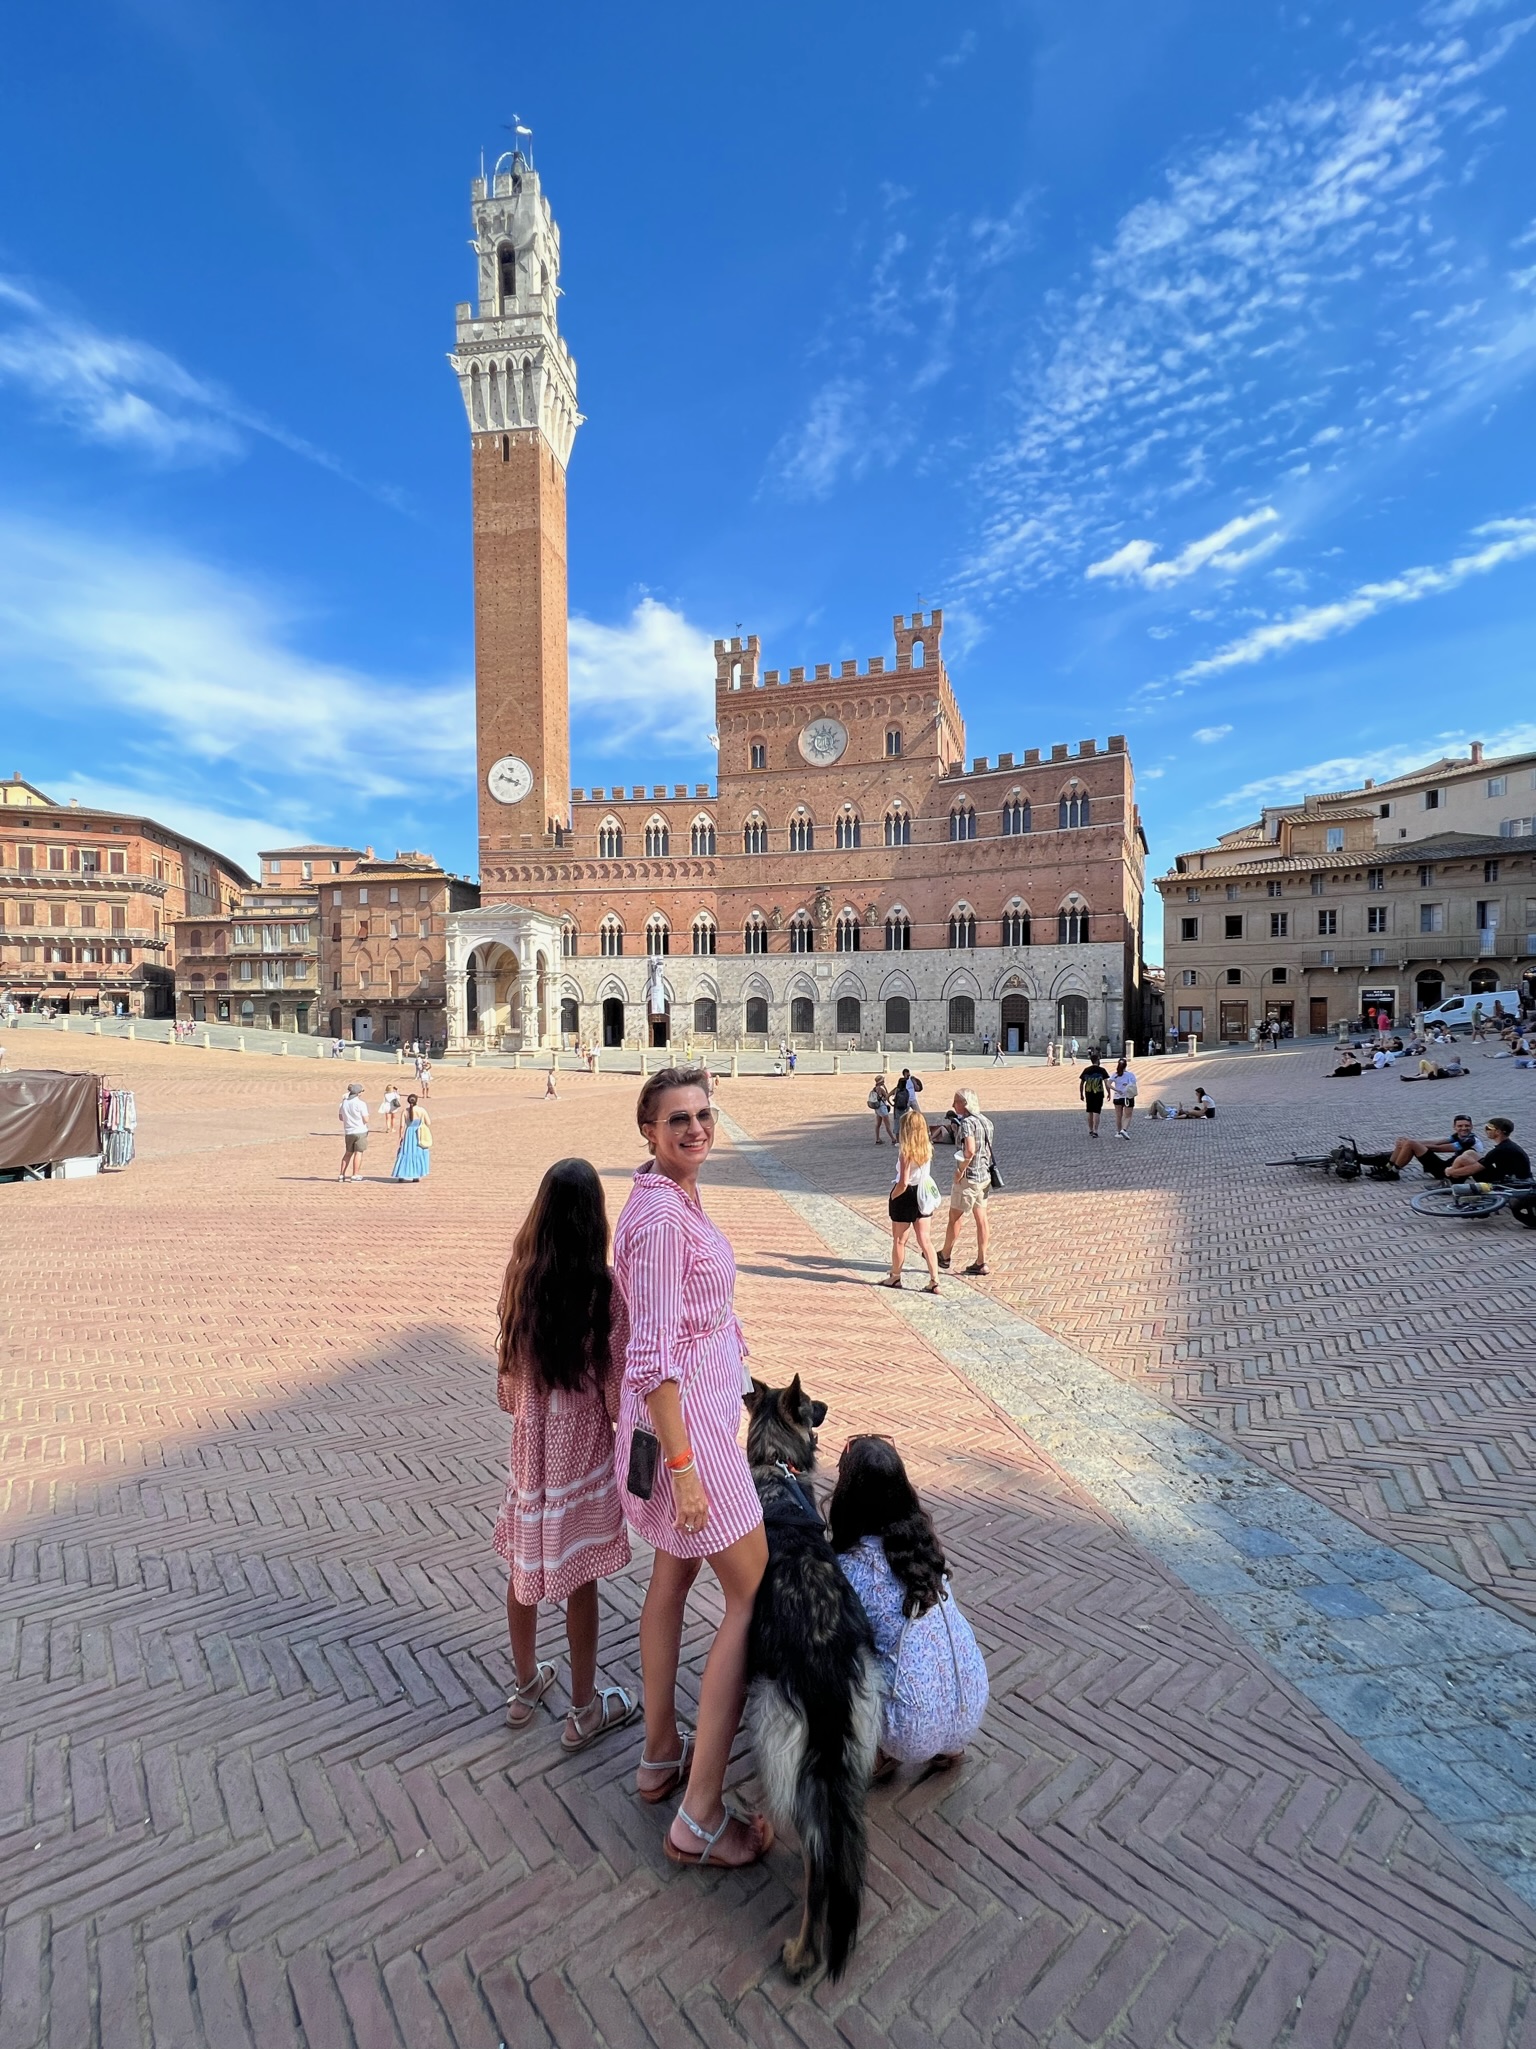 Toskana mit Kindern: Der berühmte autofreie Muschelplatz in Siena